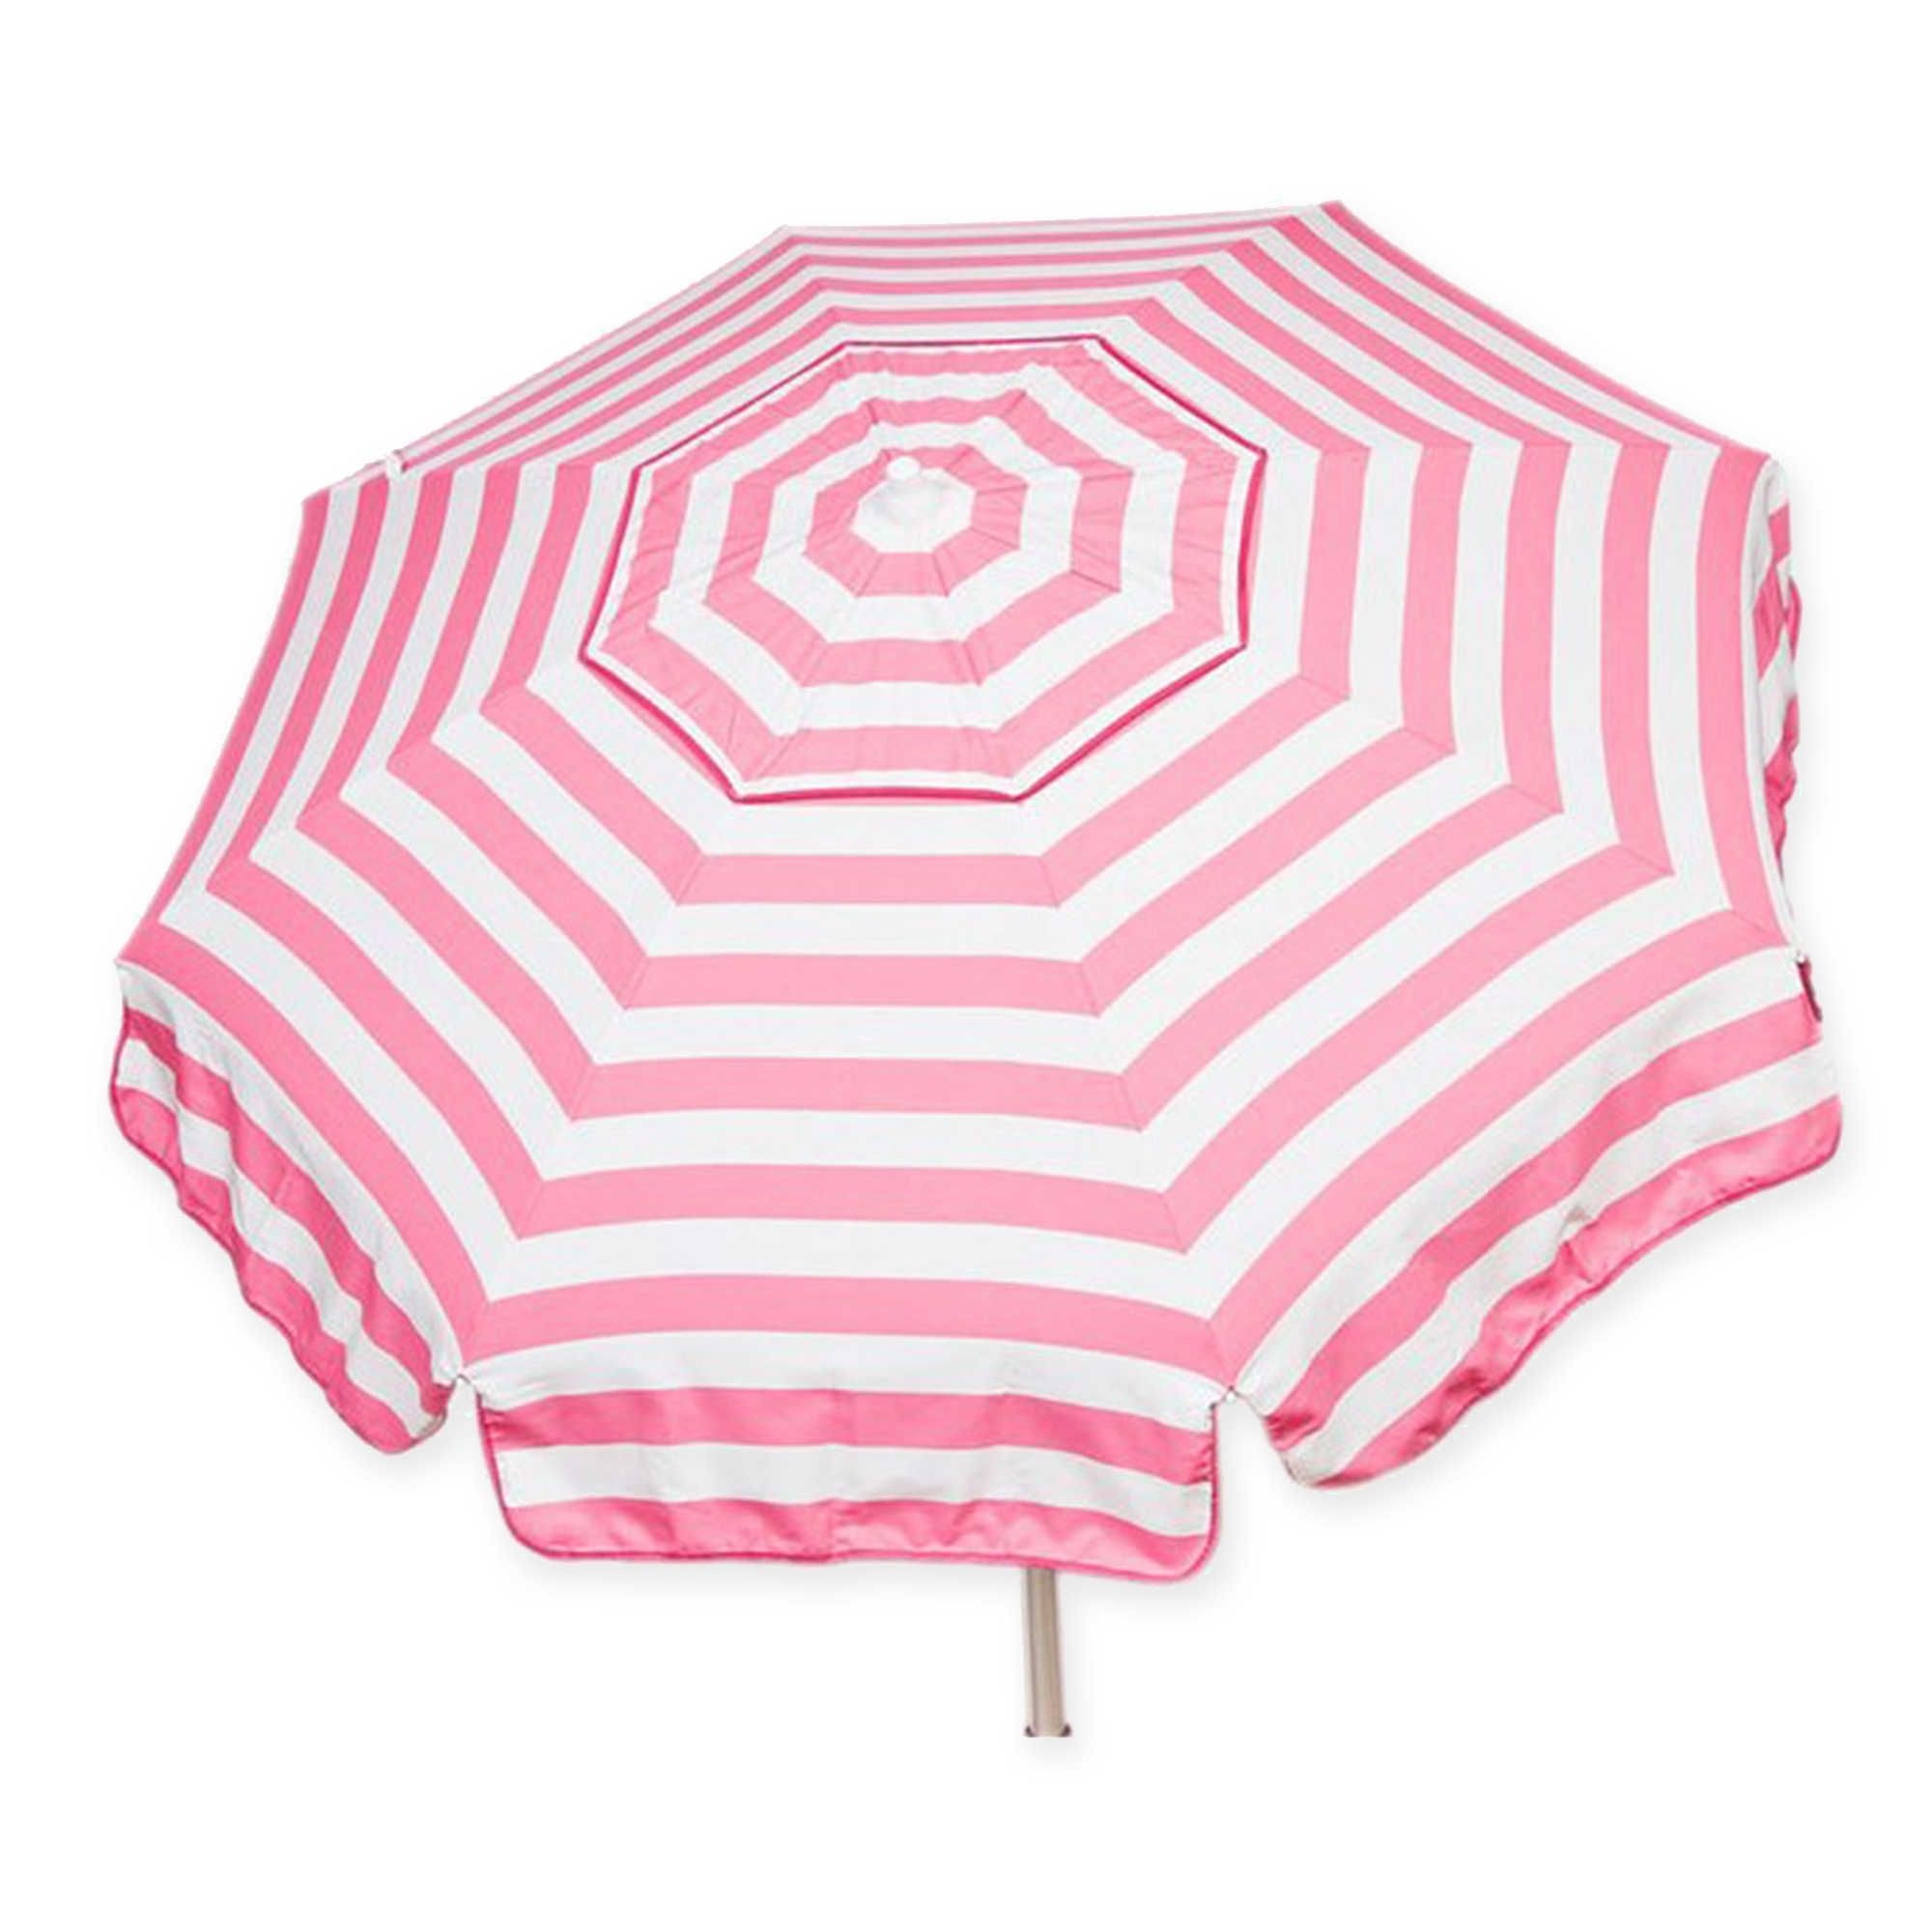 Bistro 6 pink white stripe patio umbrella outdoor garden market